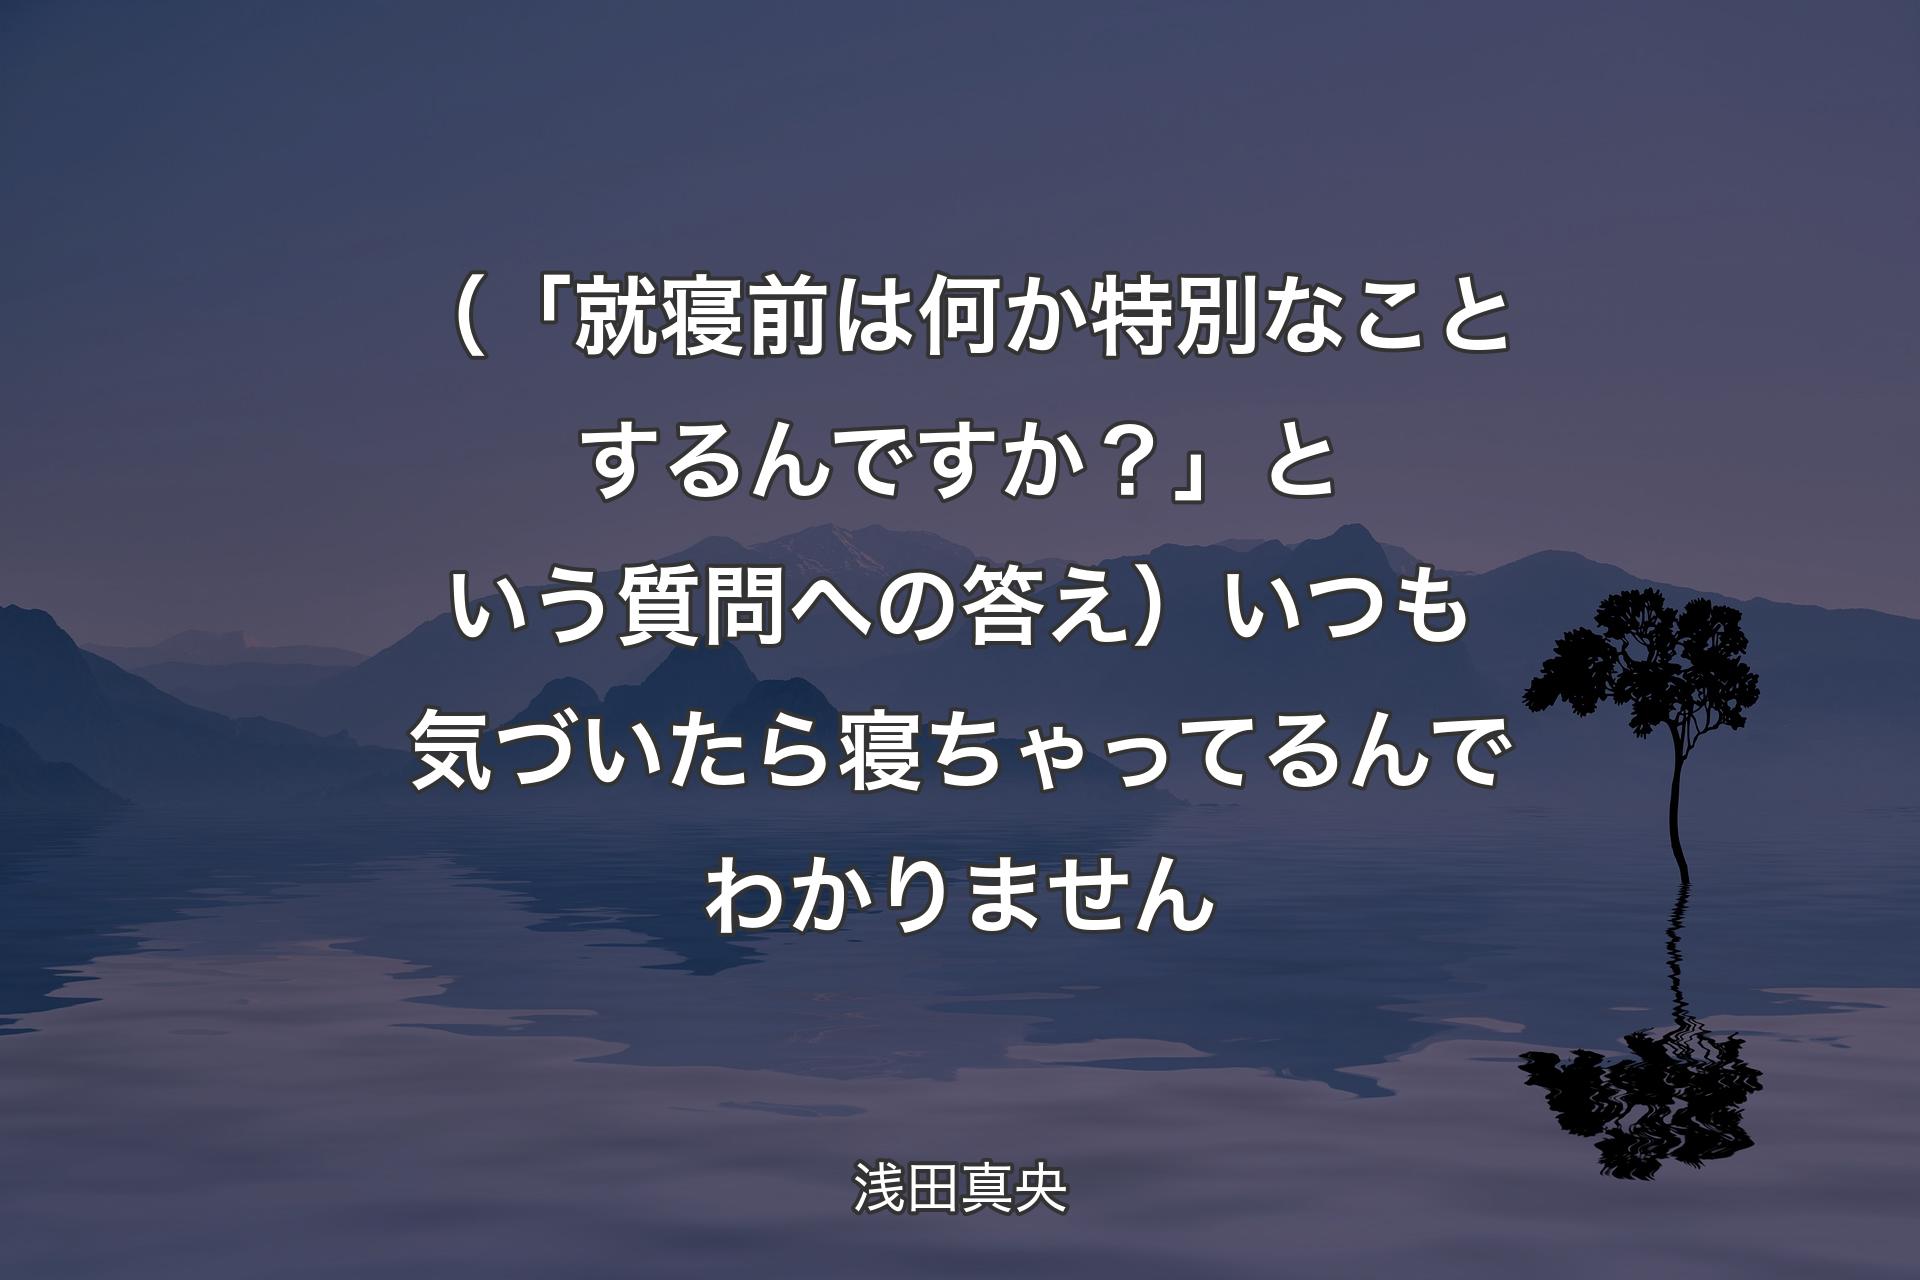 【背景4】（「就寝前は何か特別なことするんですか？」という質問への答え）いつも気づいたら寝ちゃってるんでわかりません - 浅田真央